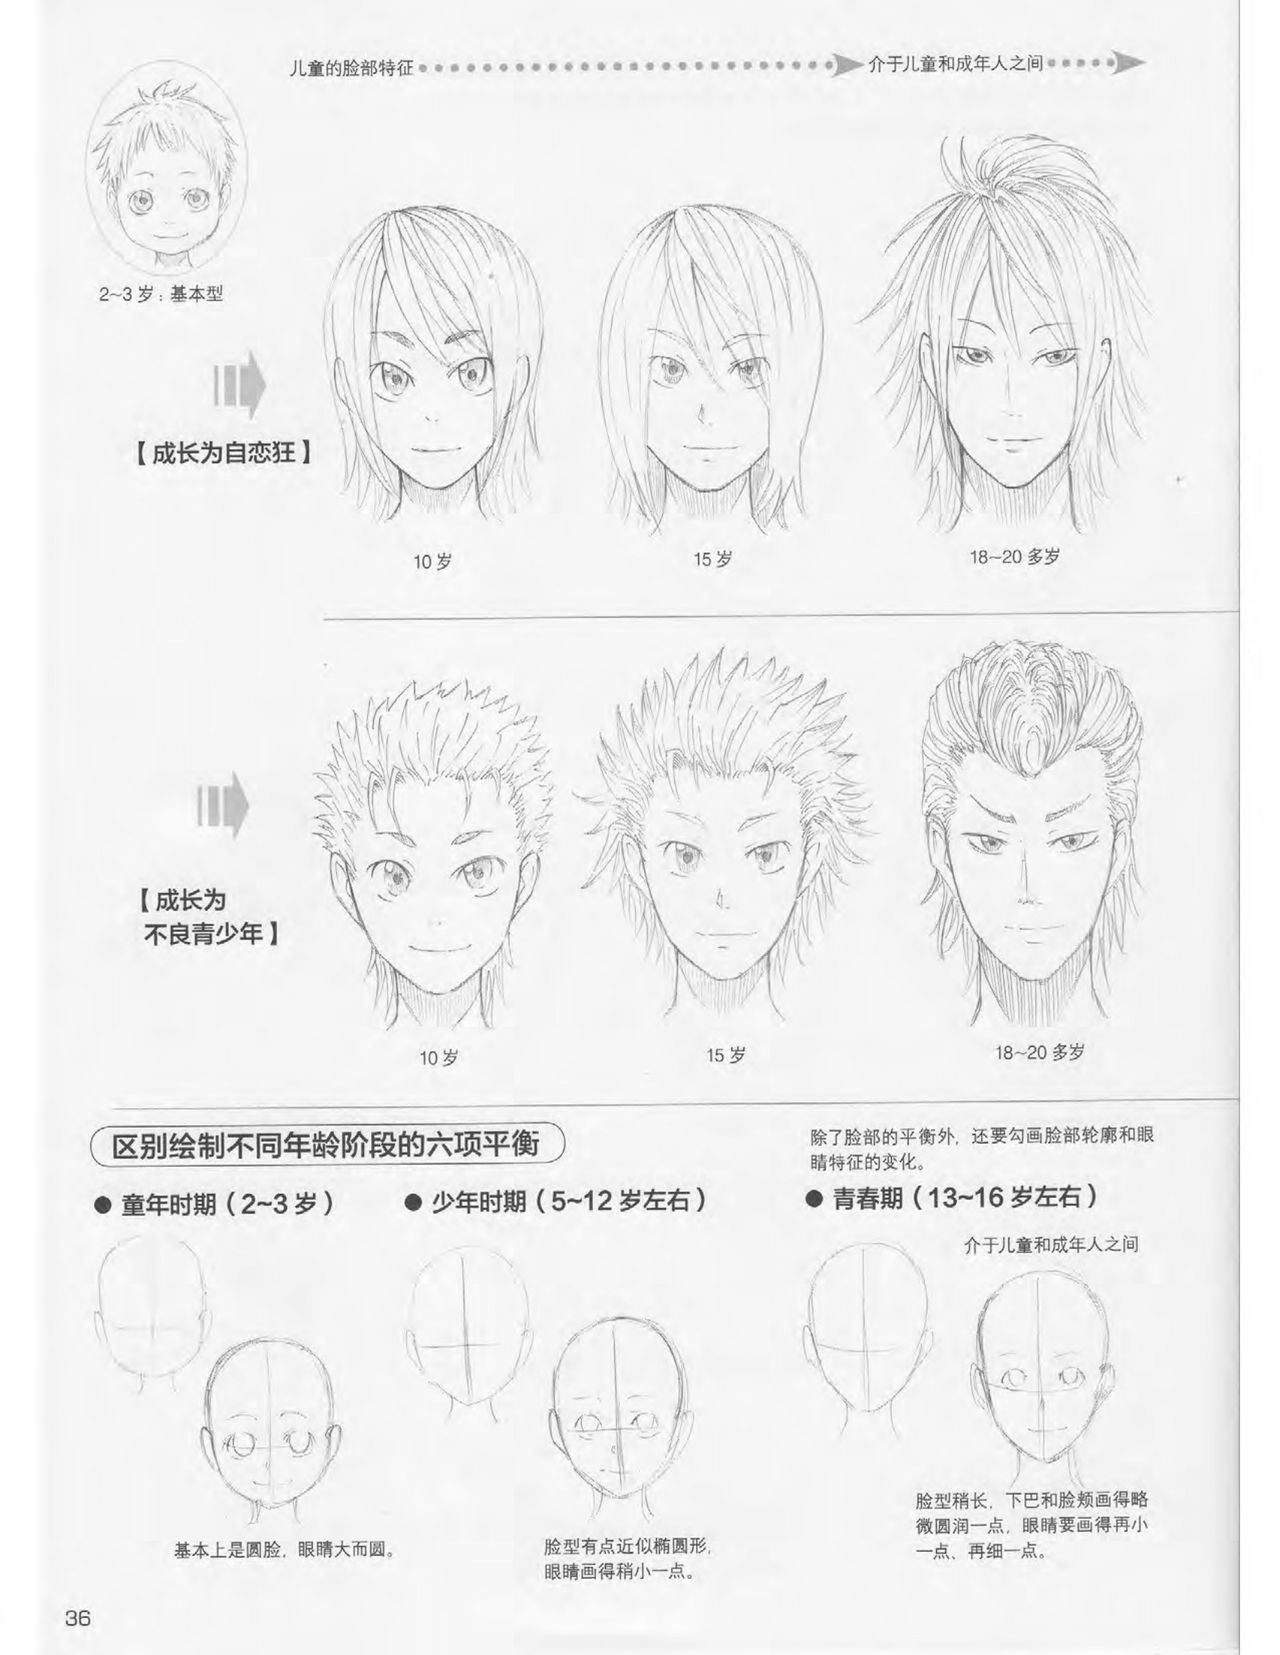 Japanese Manga Master Lecture 3: Lin Akira and Kakumaru Maru Talk About Glamorous Character Modeling 36